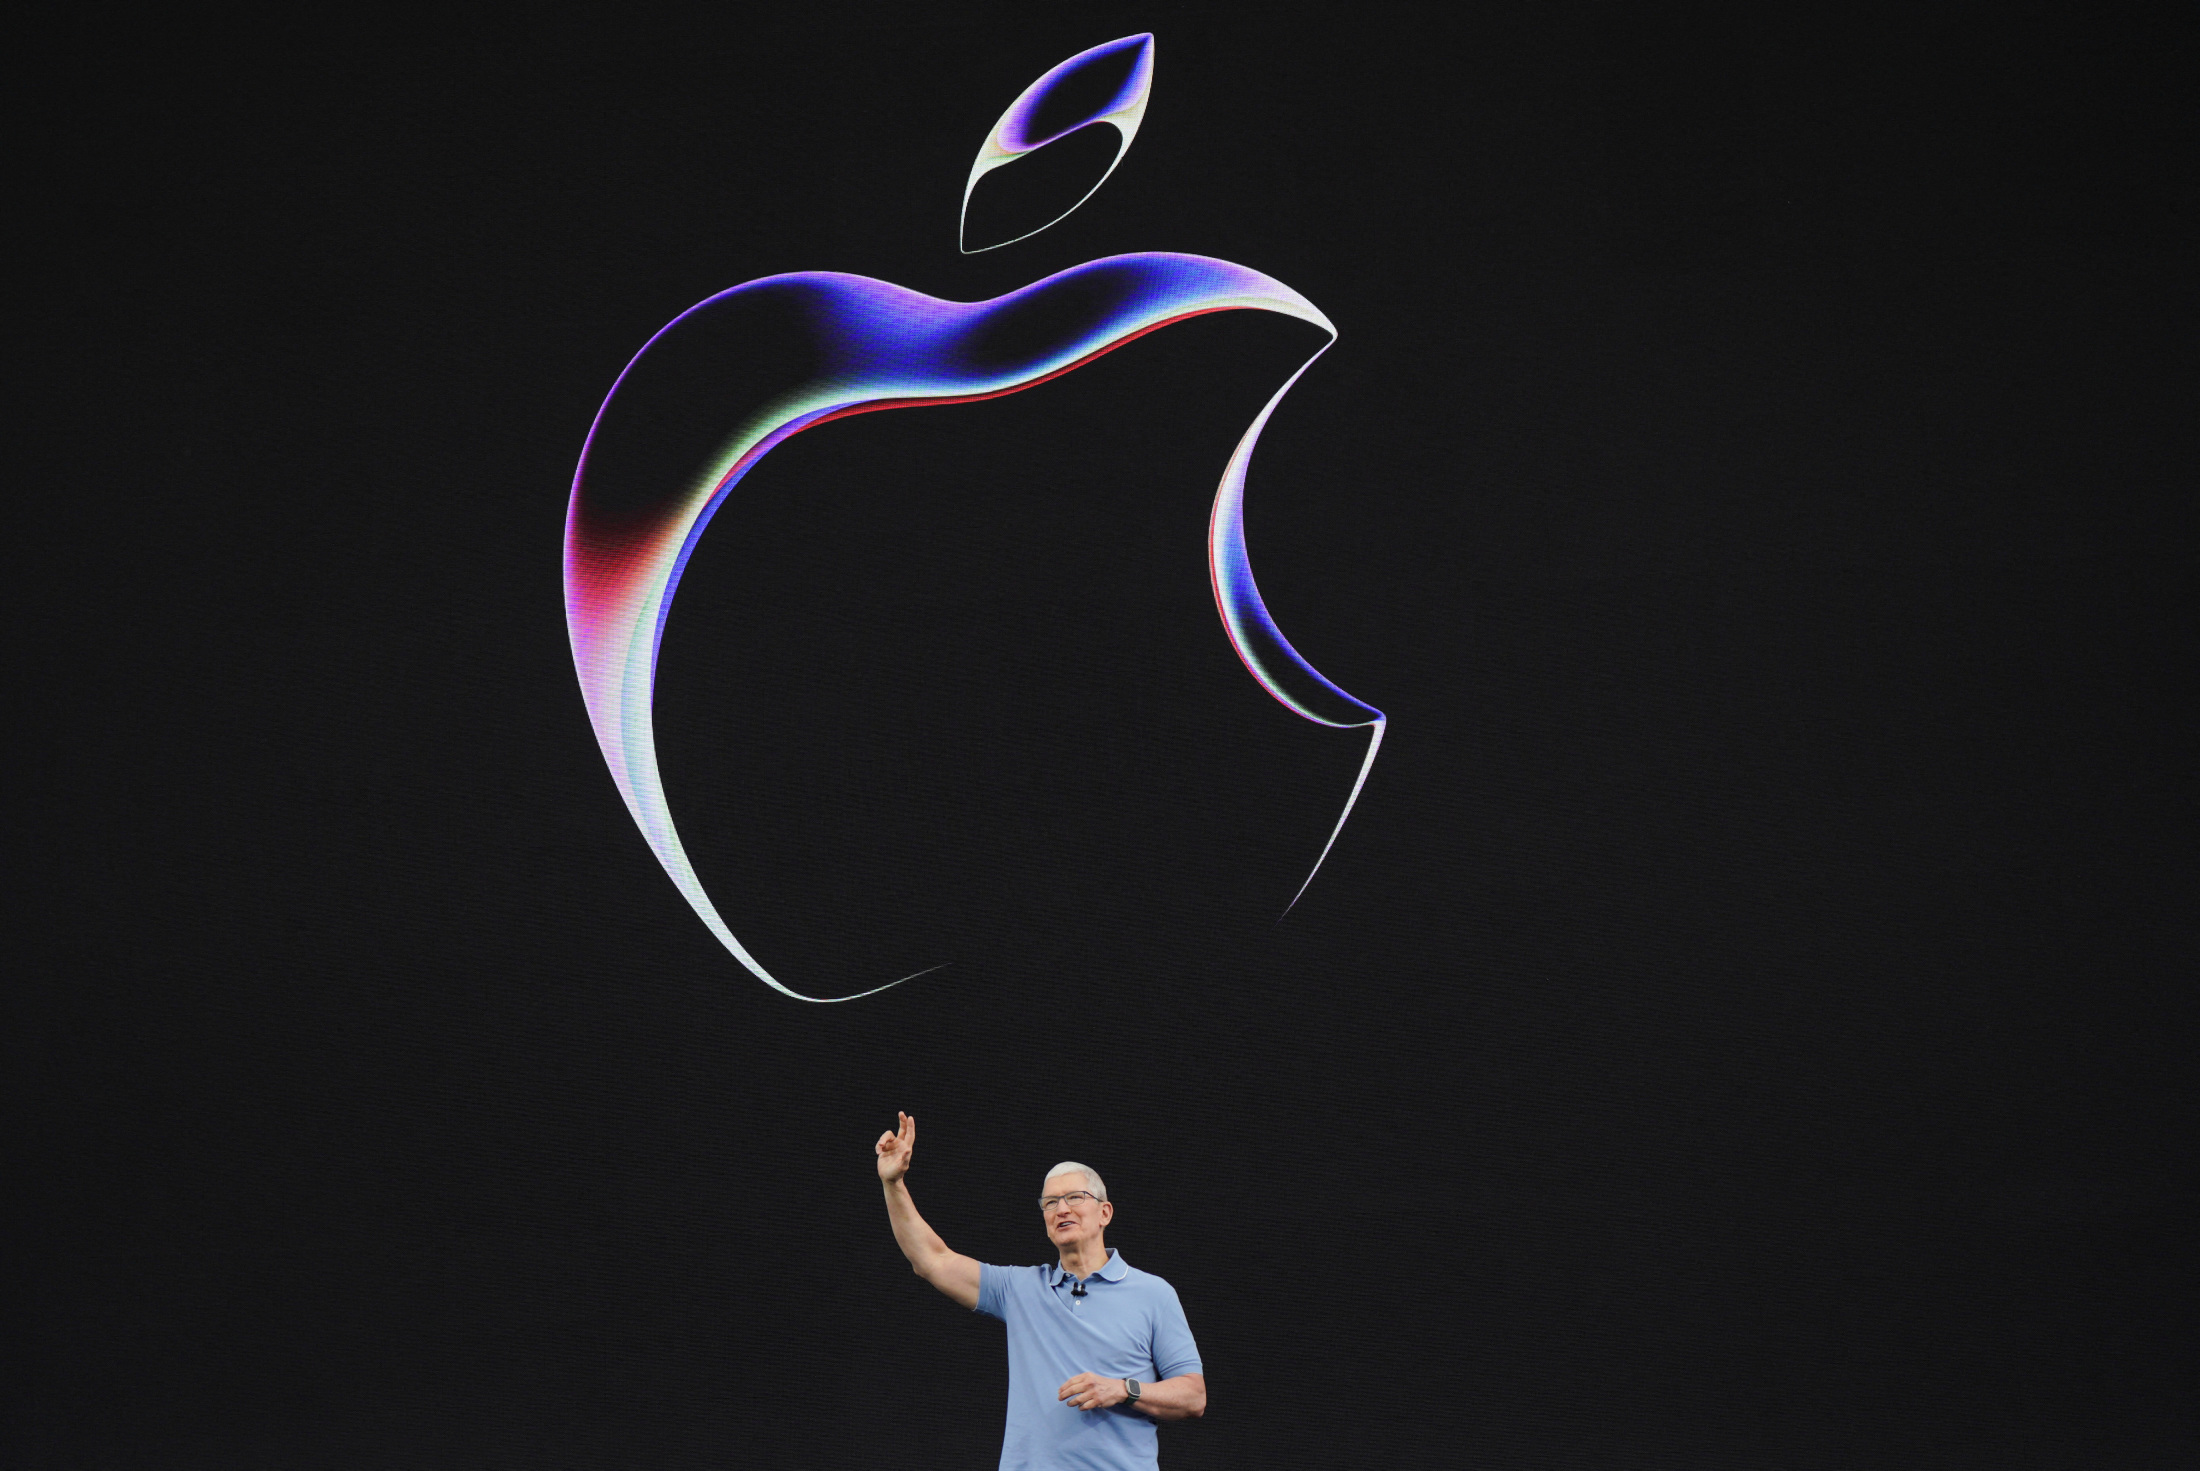 【期待】アップルが『折りたたみ式iPhone』を開発中と報じられる！今後の動きに注目